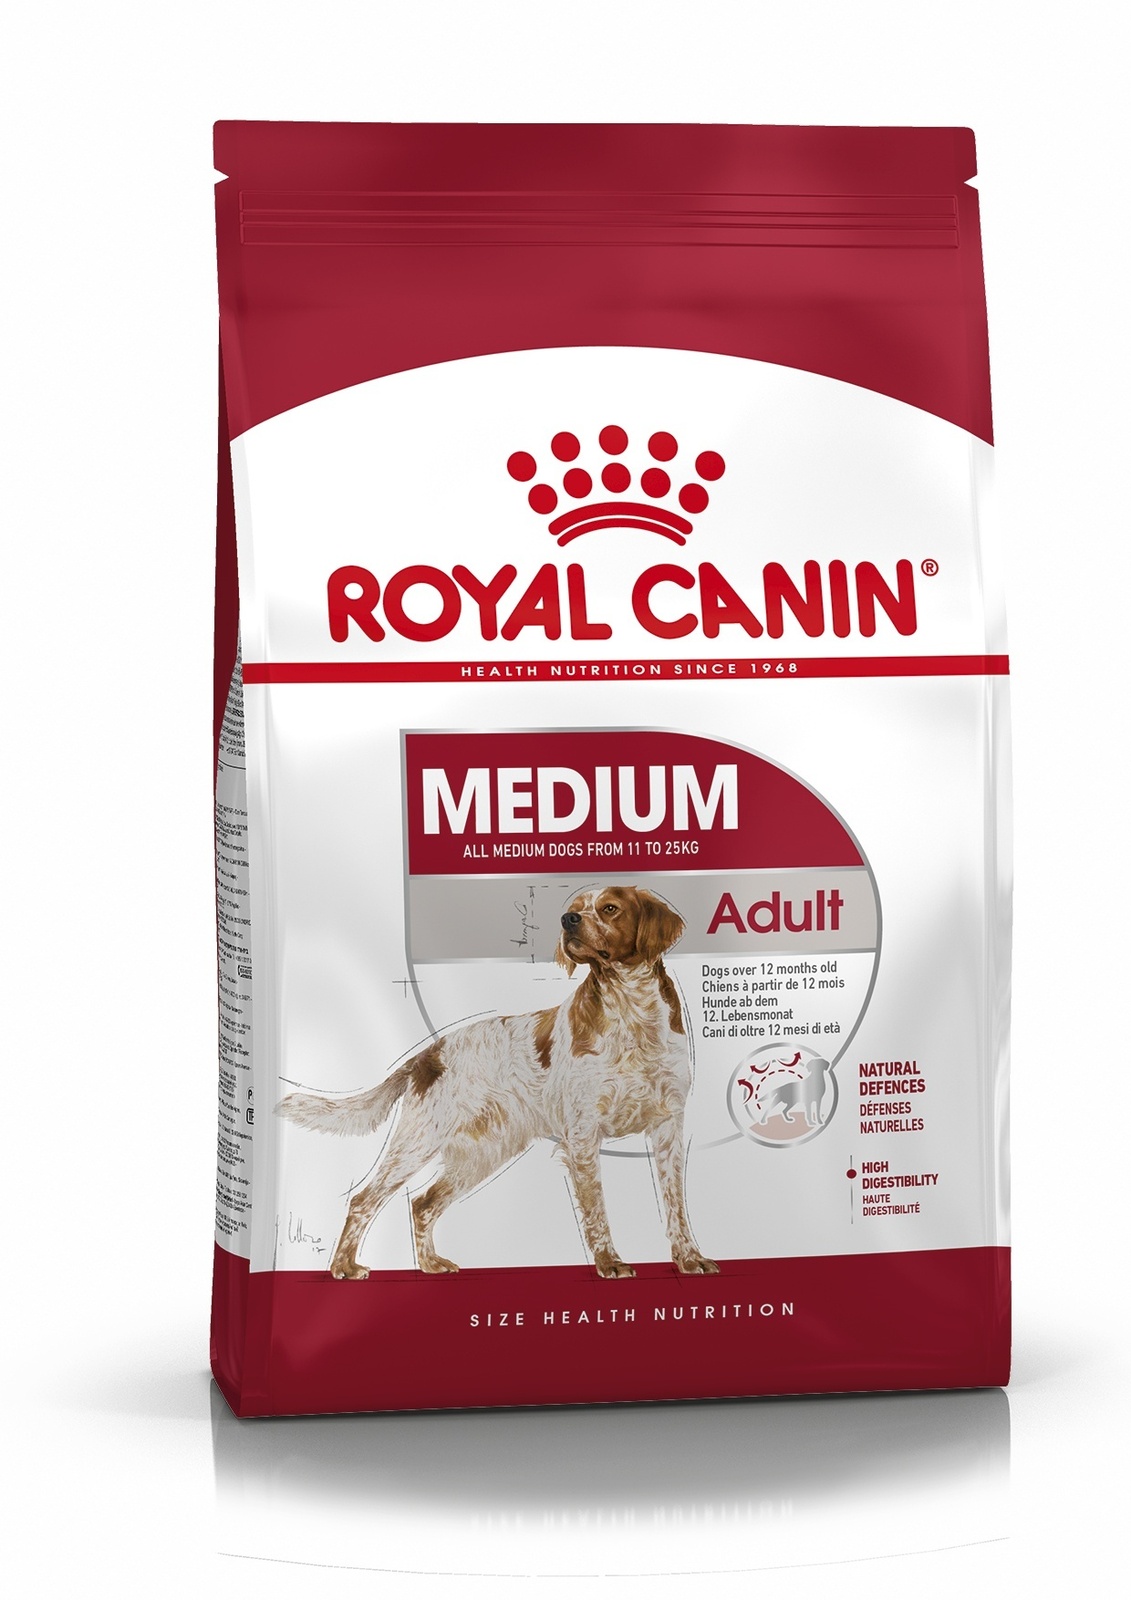 Для взрослых собак средних размеров: 11-25 кг, 1-7 лет (15 кг) Royal Canin (сухие корма) Для взрослых собак средних размеров: 11-25 кг, 1-7 лет (15 кг) - фото 4